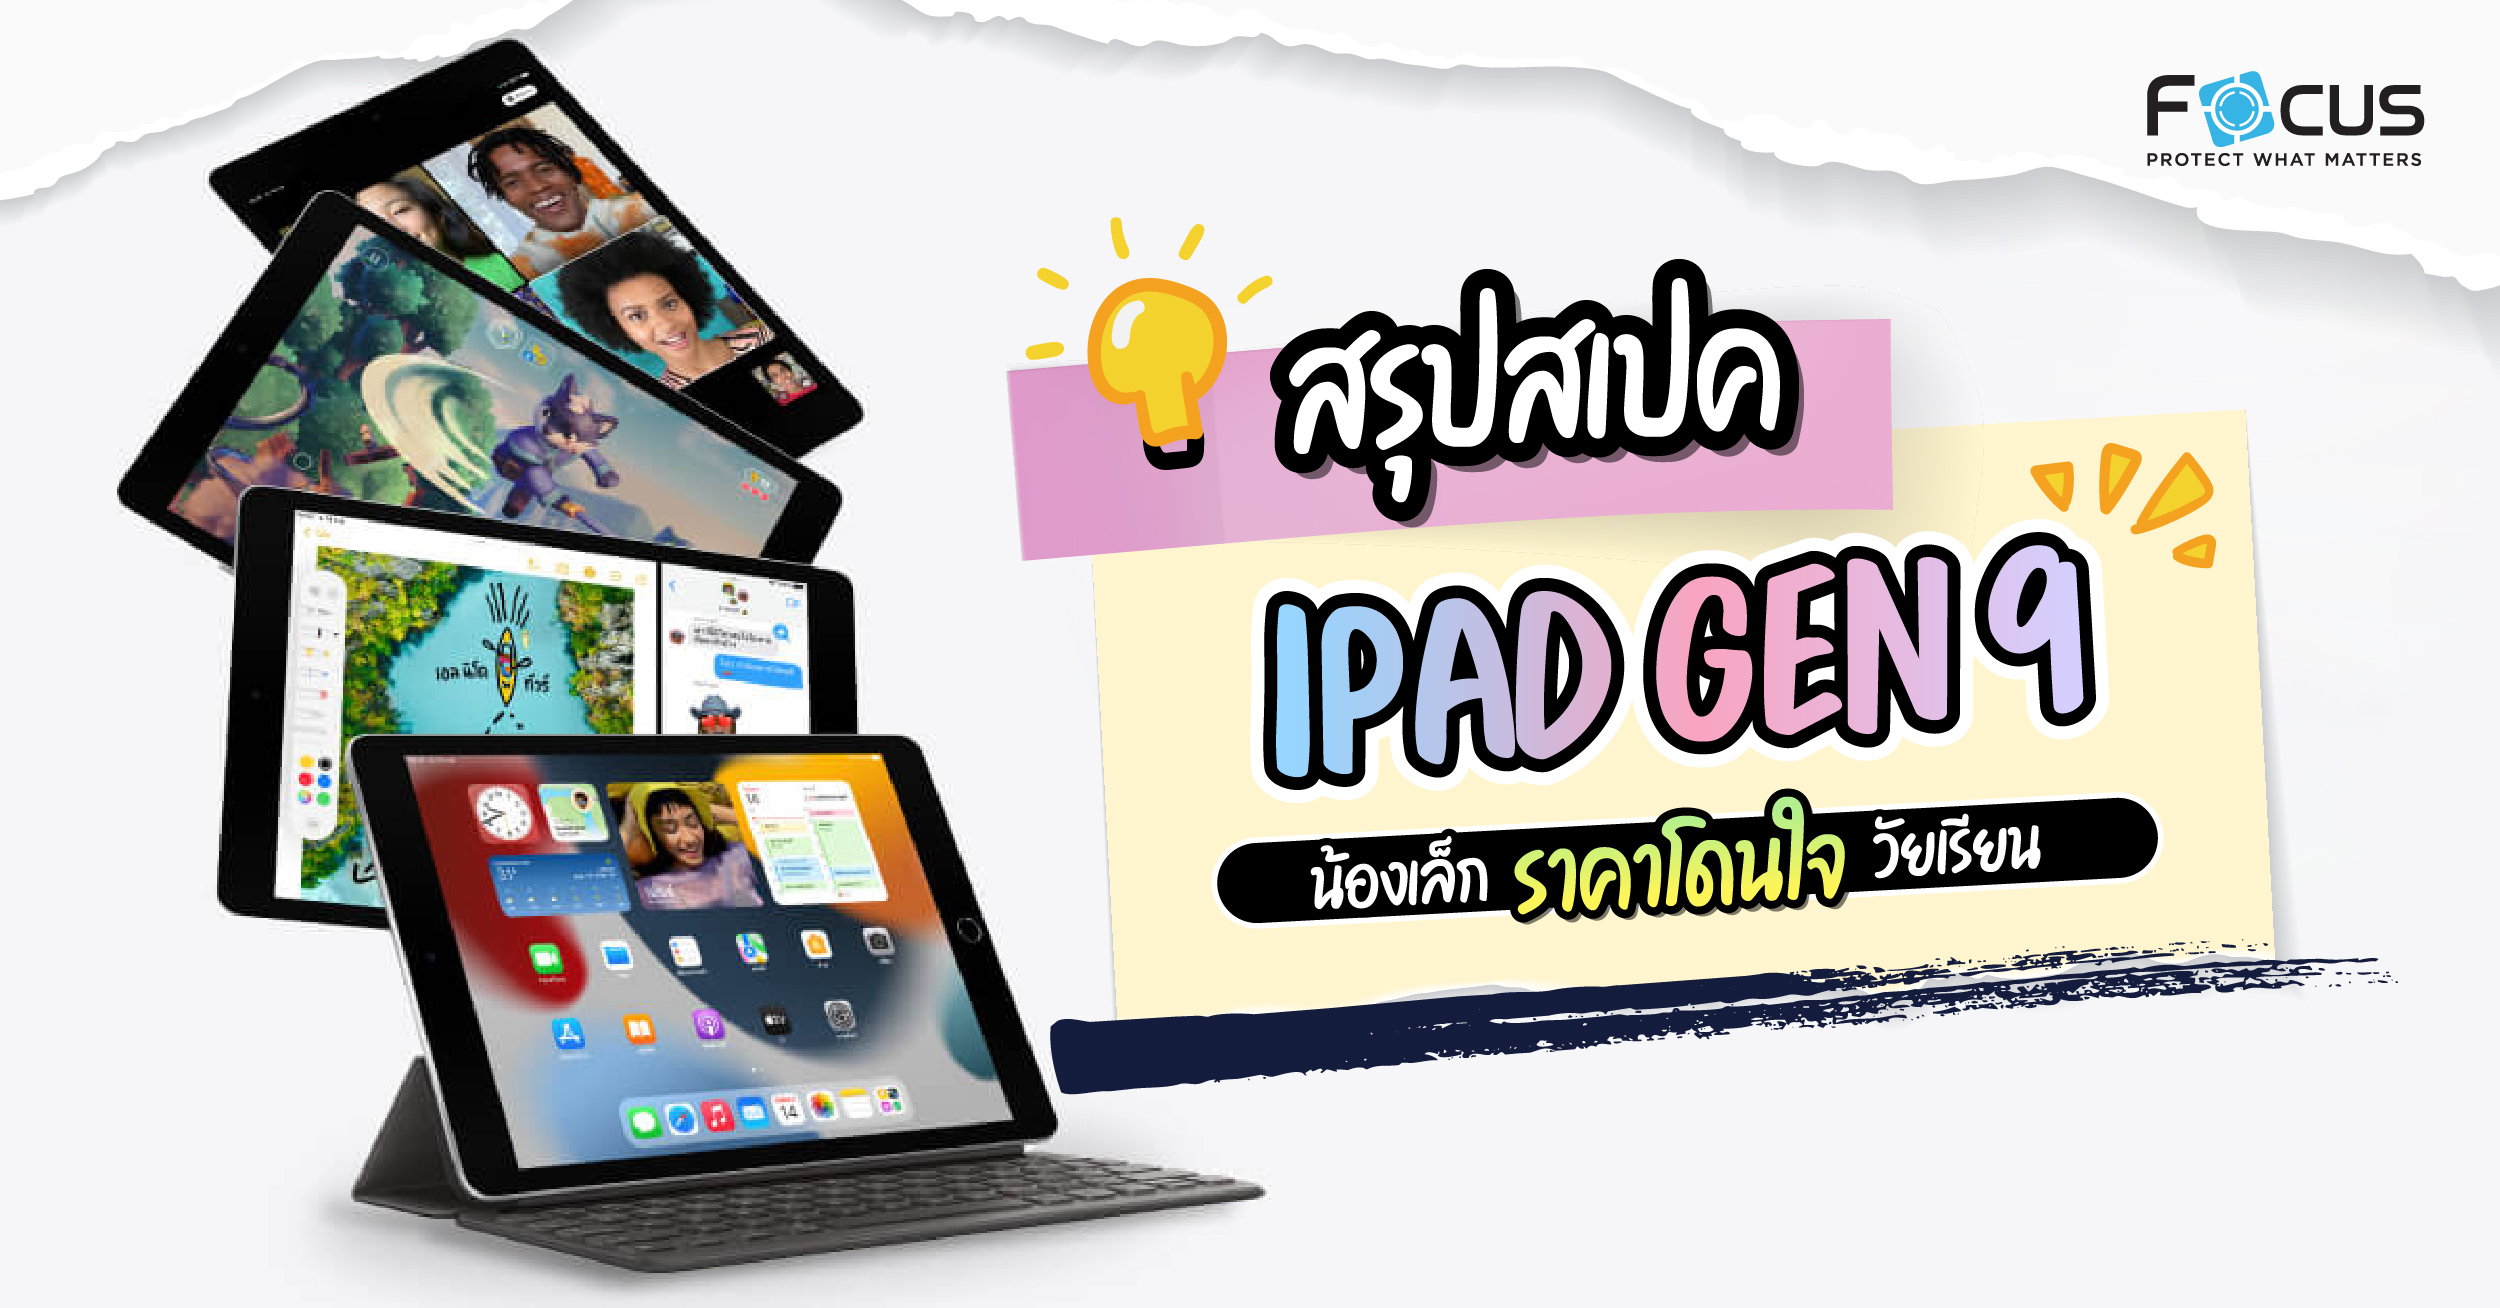 สรุปสเปค iPad gen 9 น้องเล็กราคาน่ารัก พร้อมอัปเกรดชิป A13 เหมาะกับนักเรียน นักศึกษา จริงไหม ??